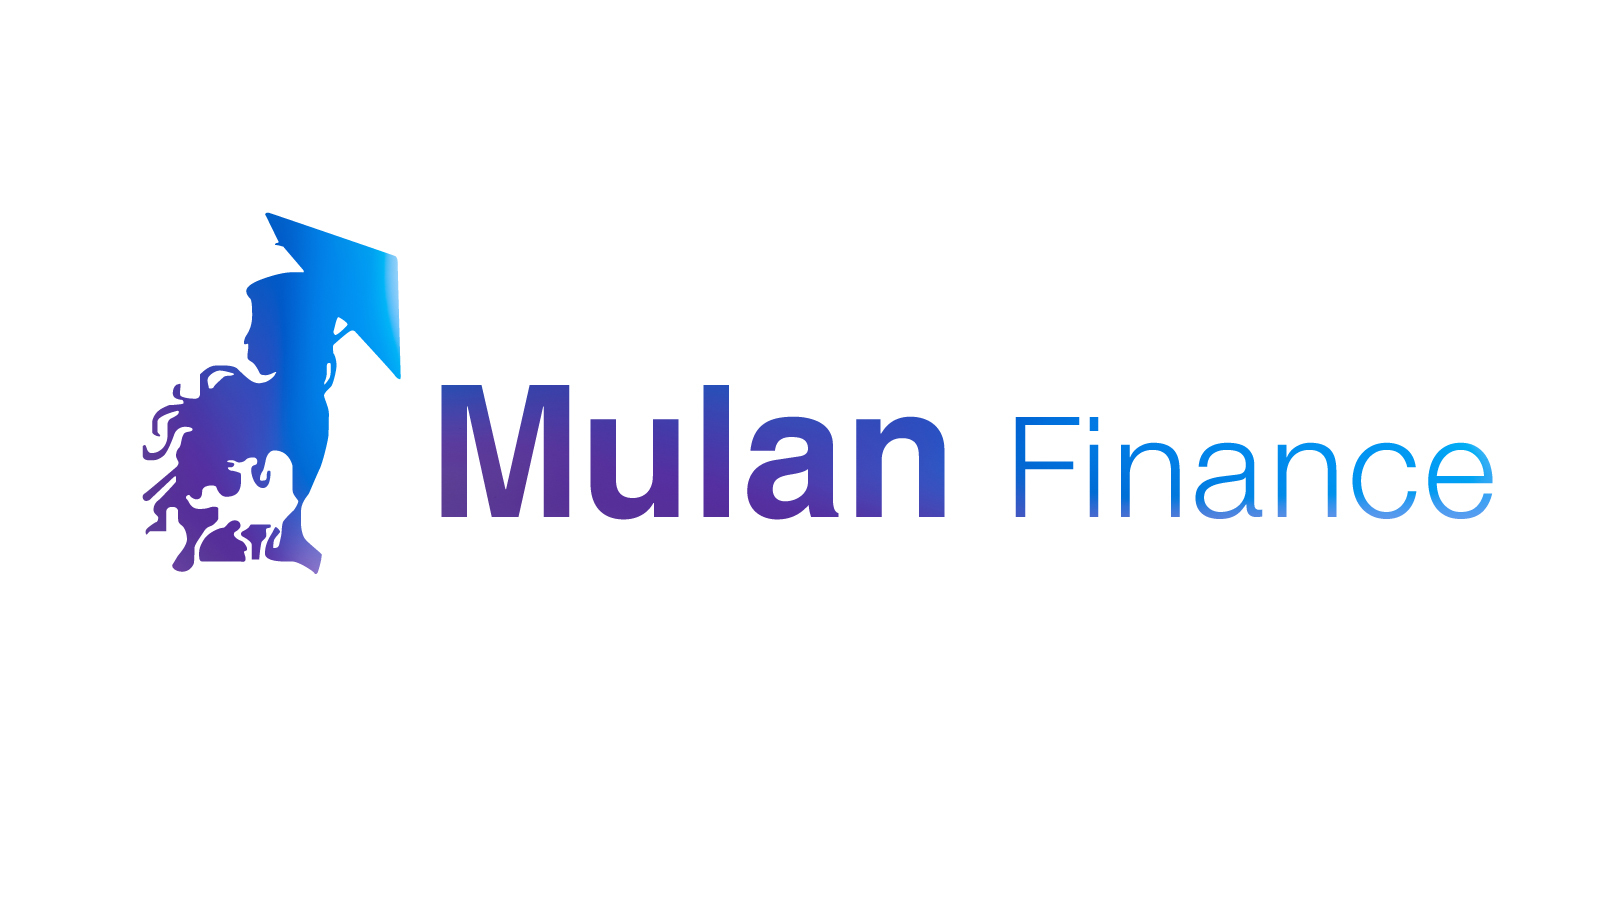 Mulan.Financeのマニュアルはこちら